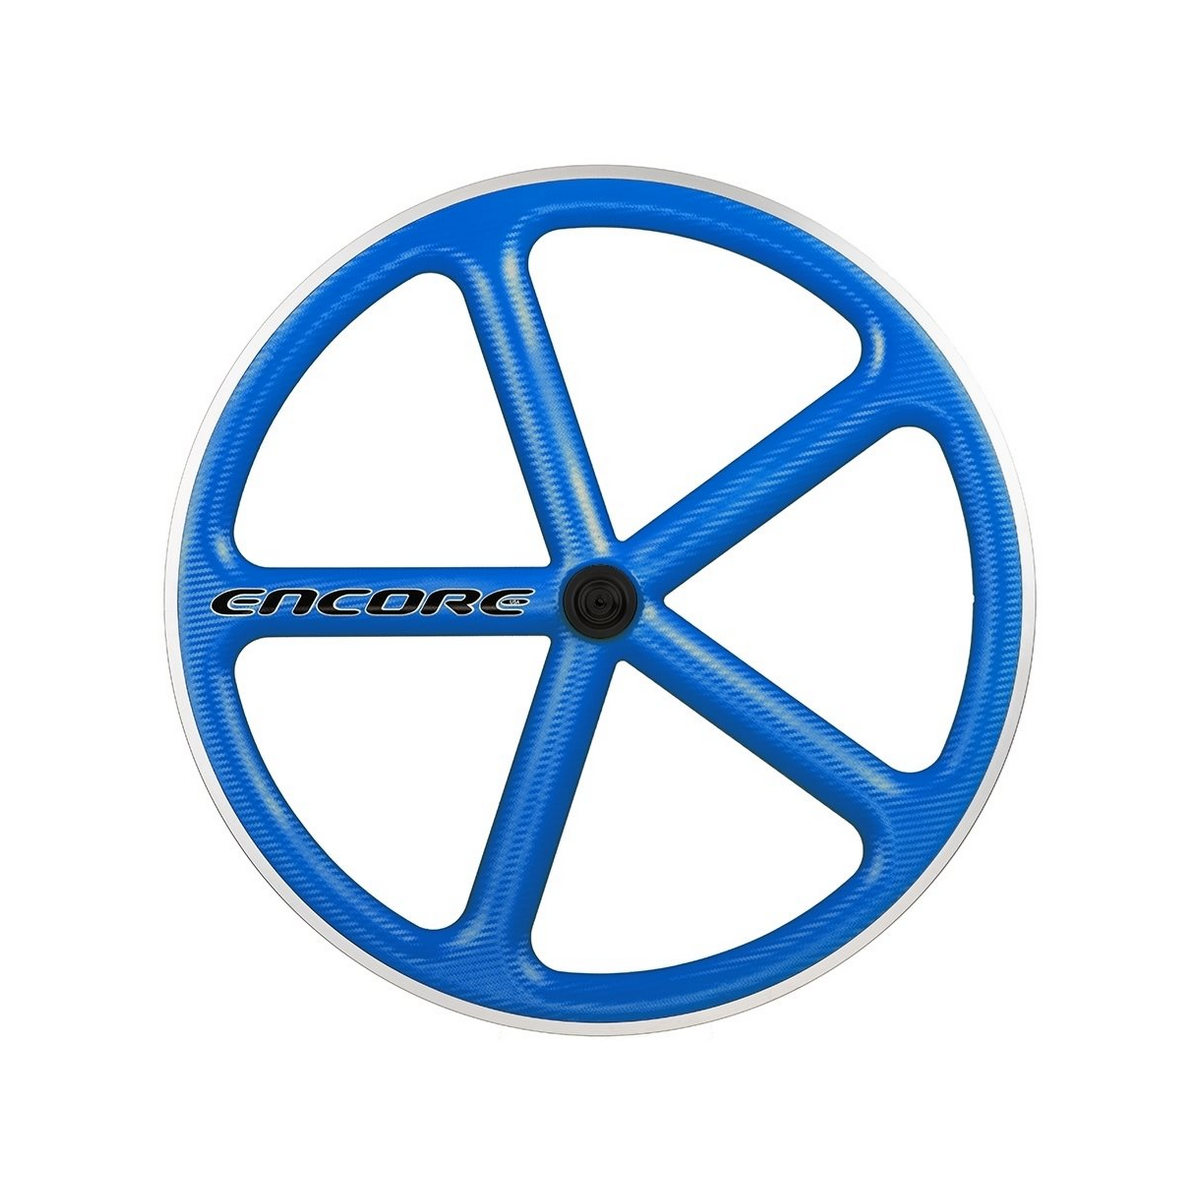 Vorderrad 700c Track 5 Speichen Carbon Geflecht blau msw